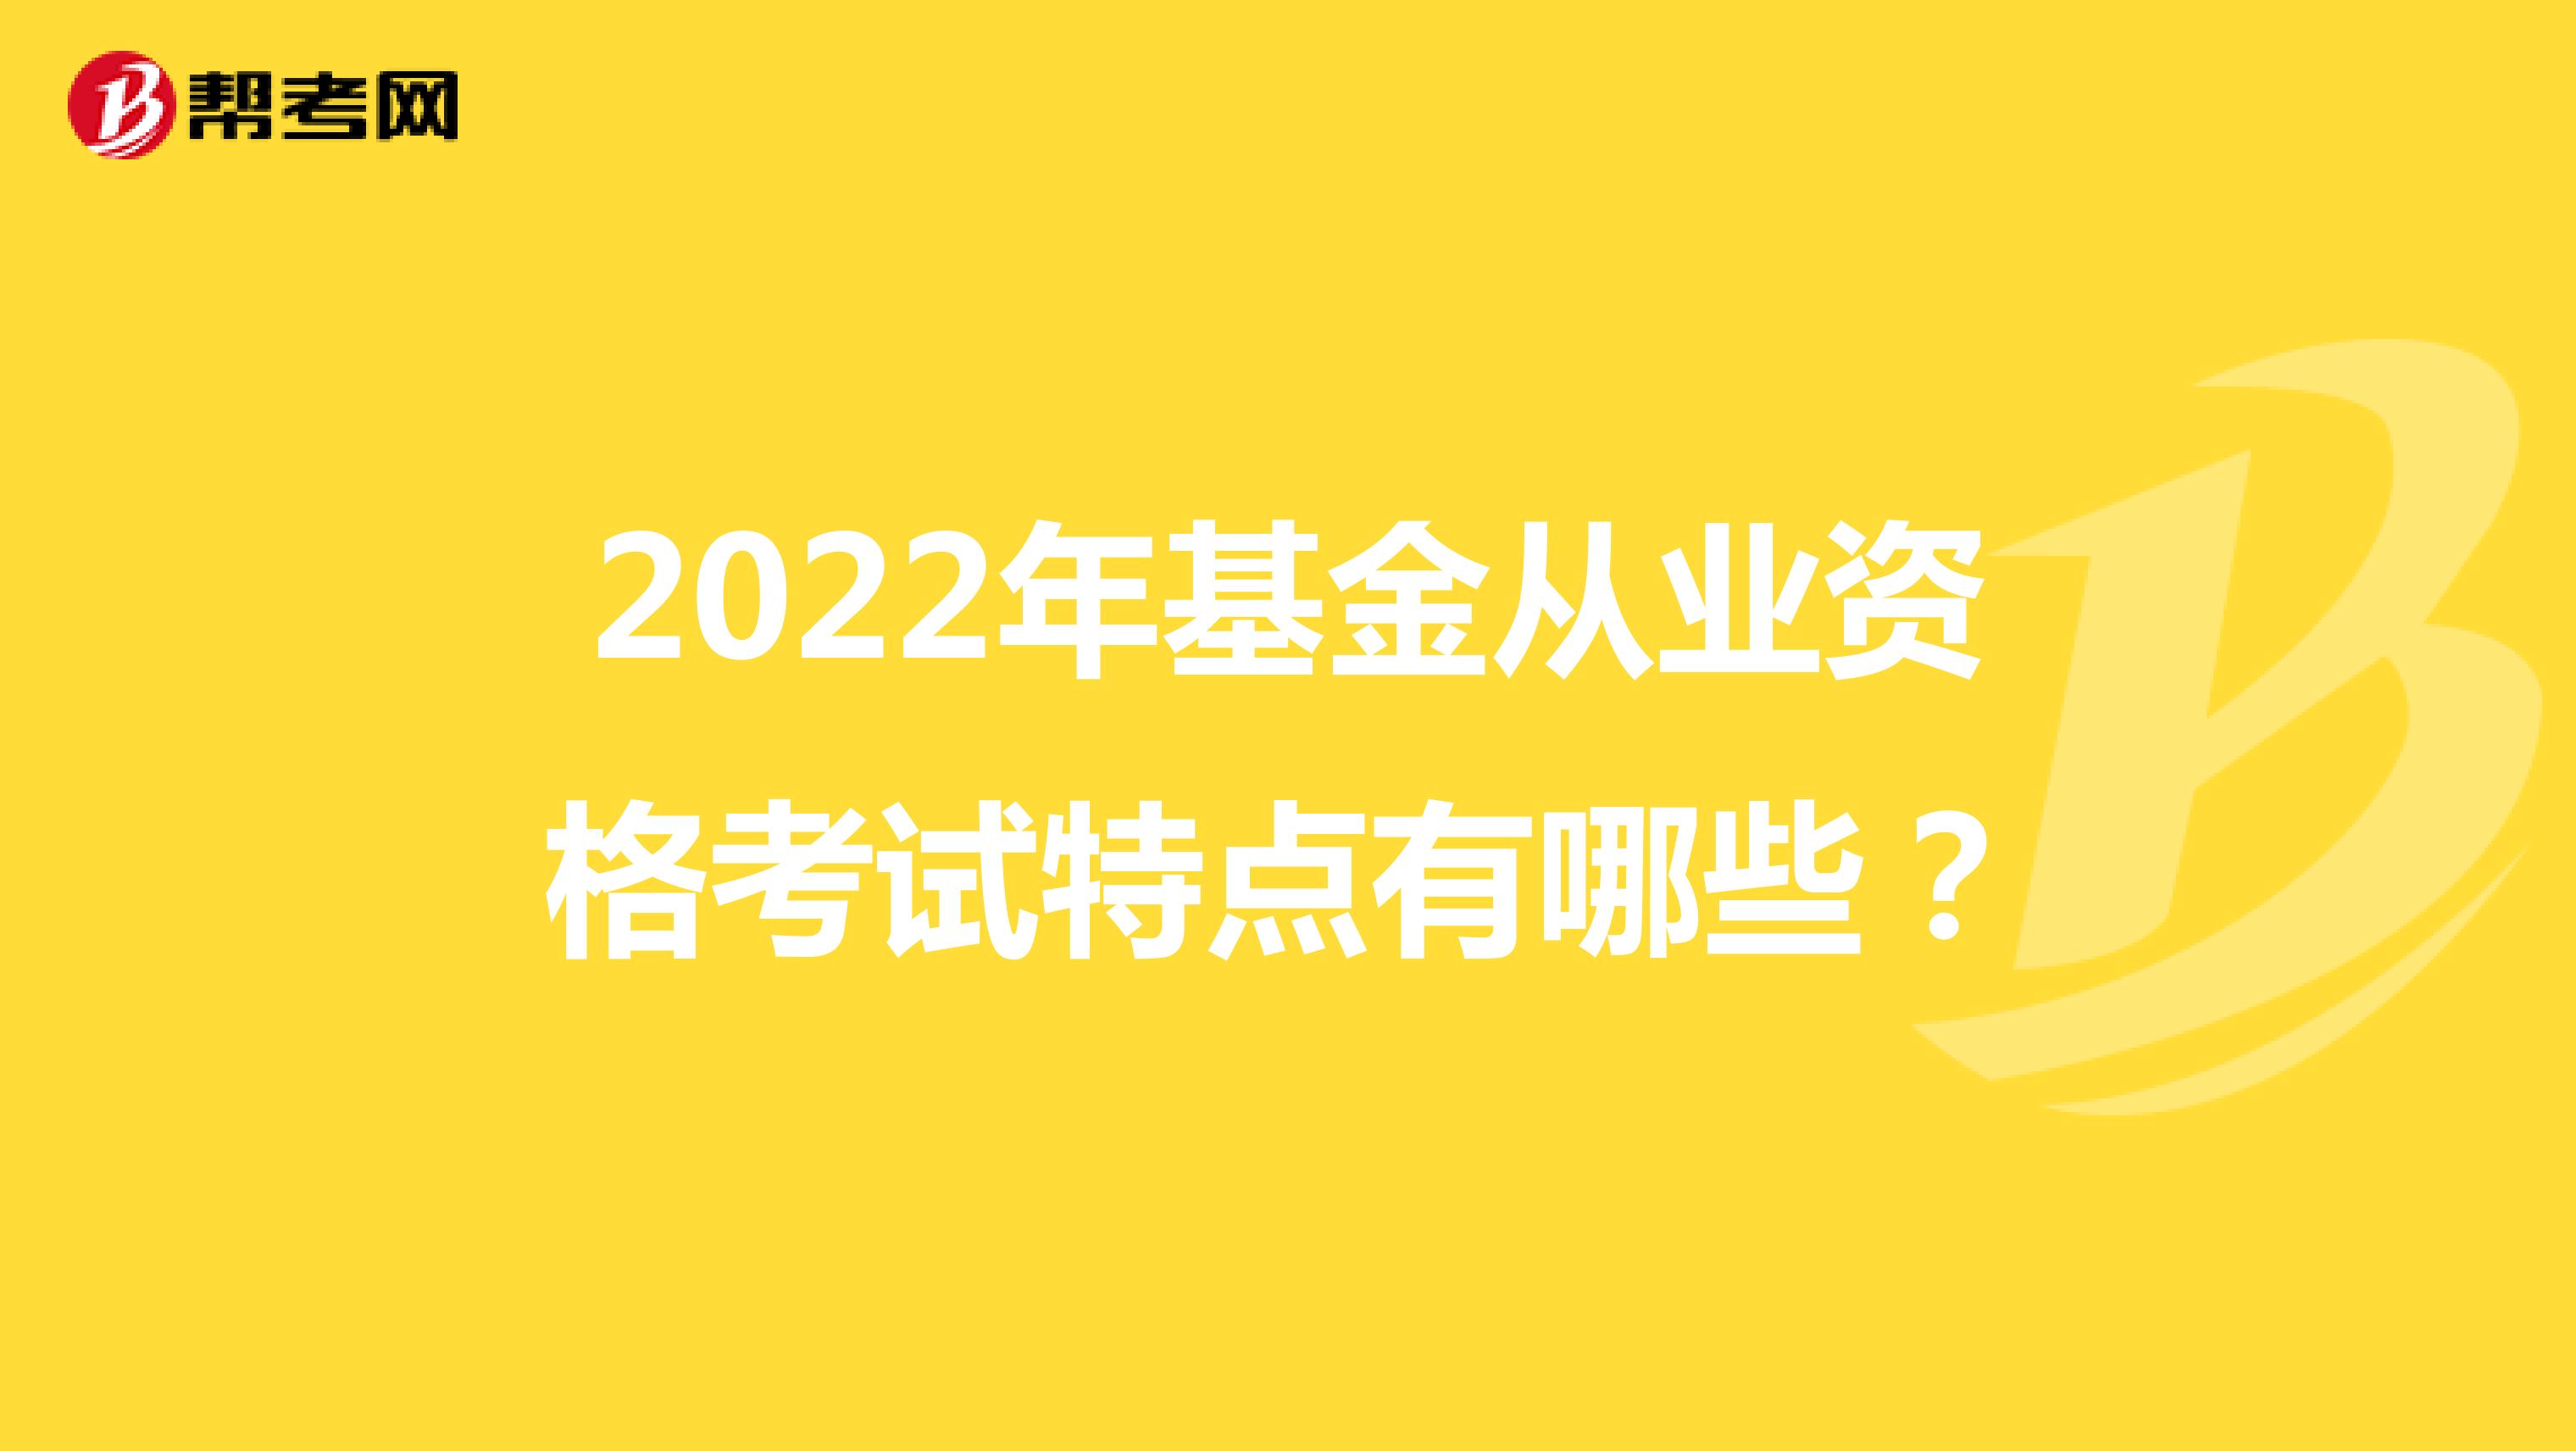 2022年基金从业资格考试特点有哪些？